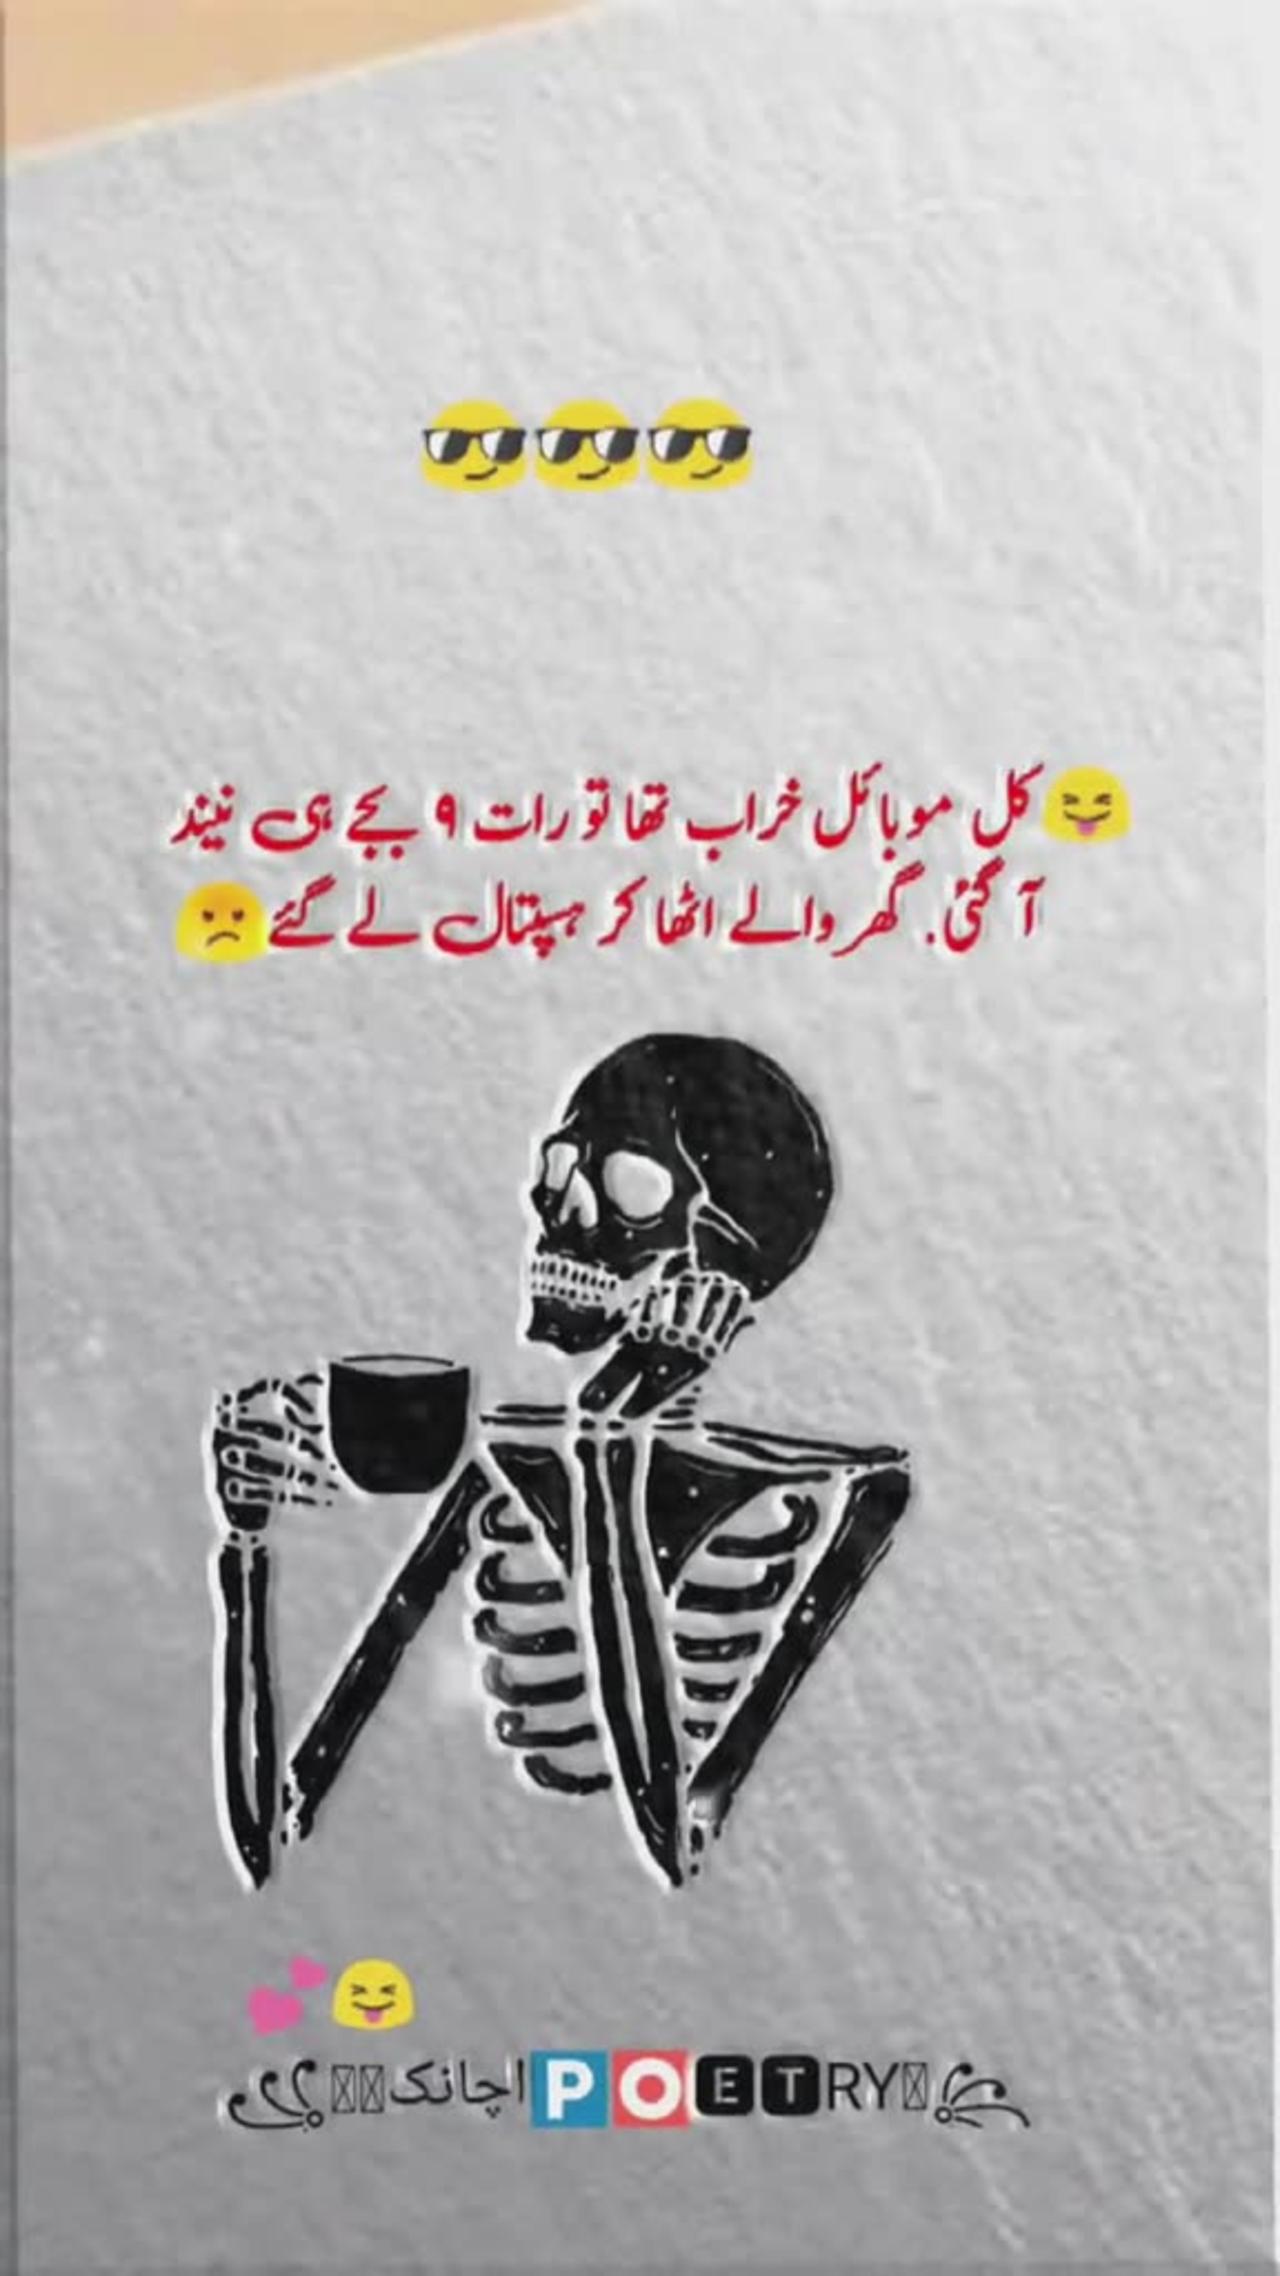 Funny lines in urdu